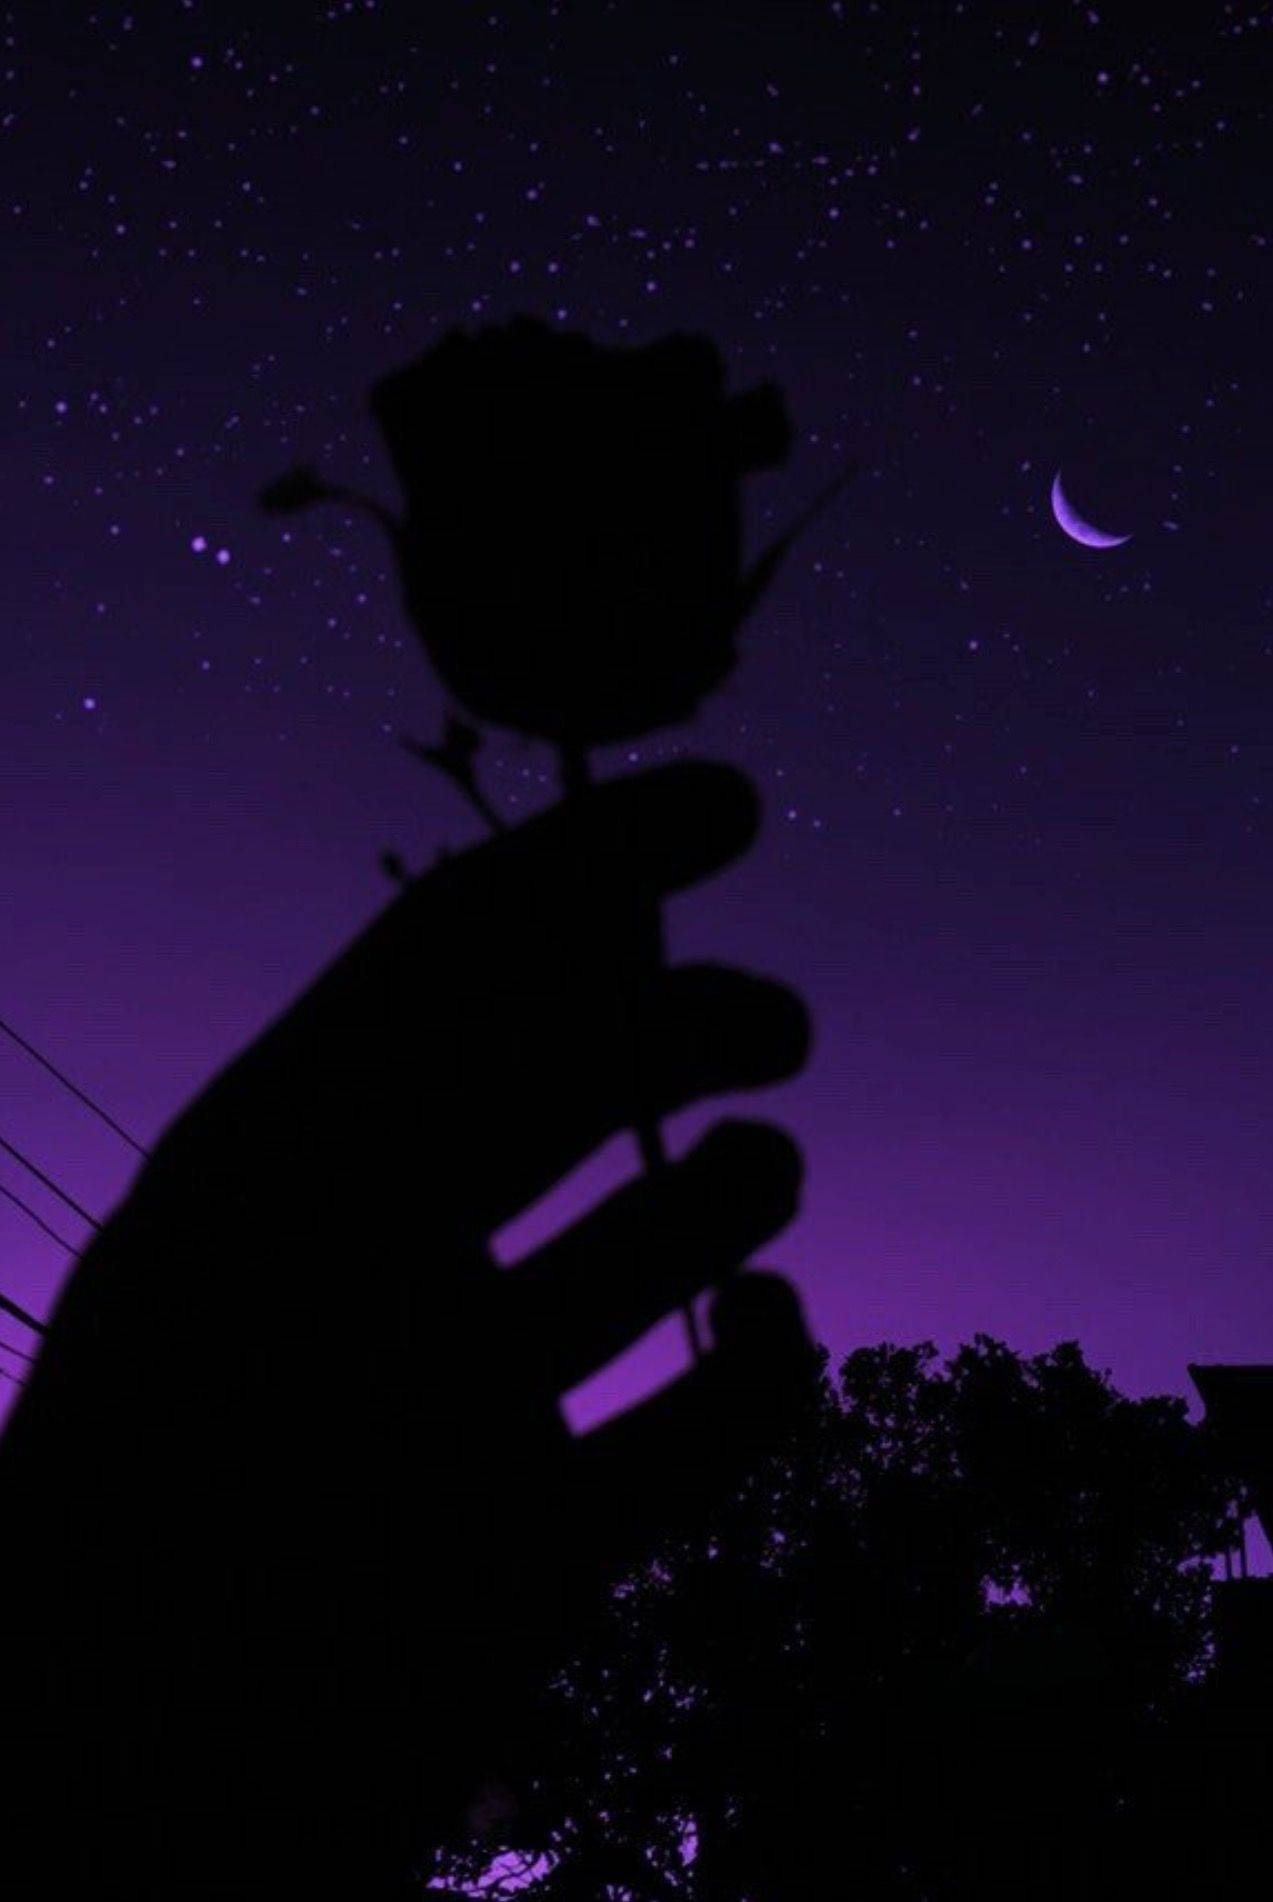 Siluetade Rosa En Tonos Oscuros De Púrpura Y Negro. Fondo de pantalla